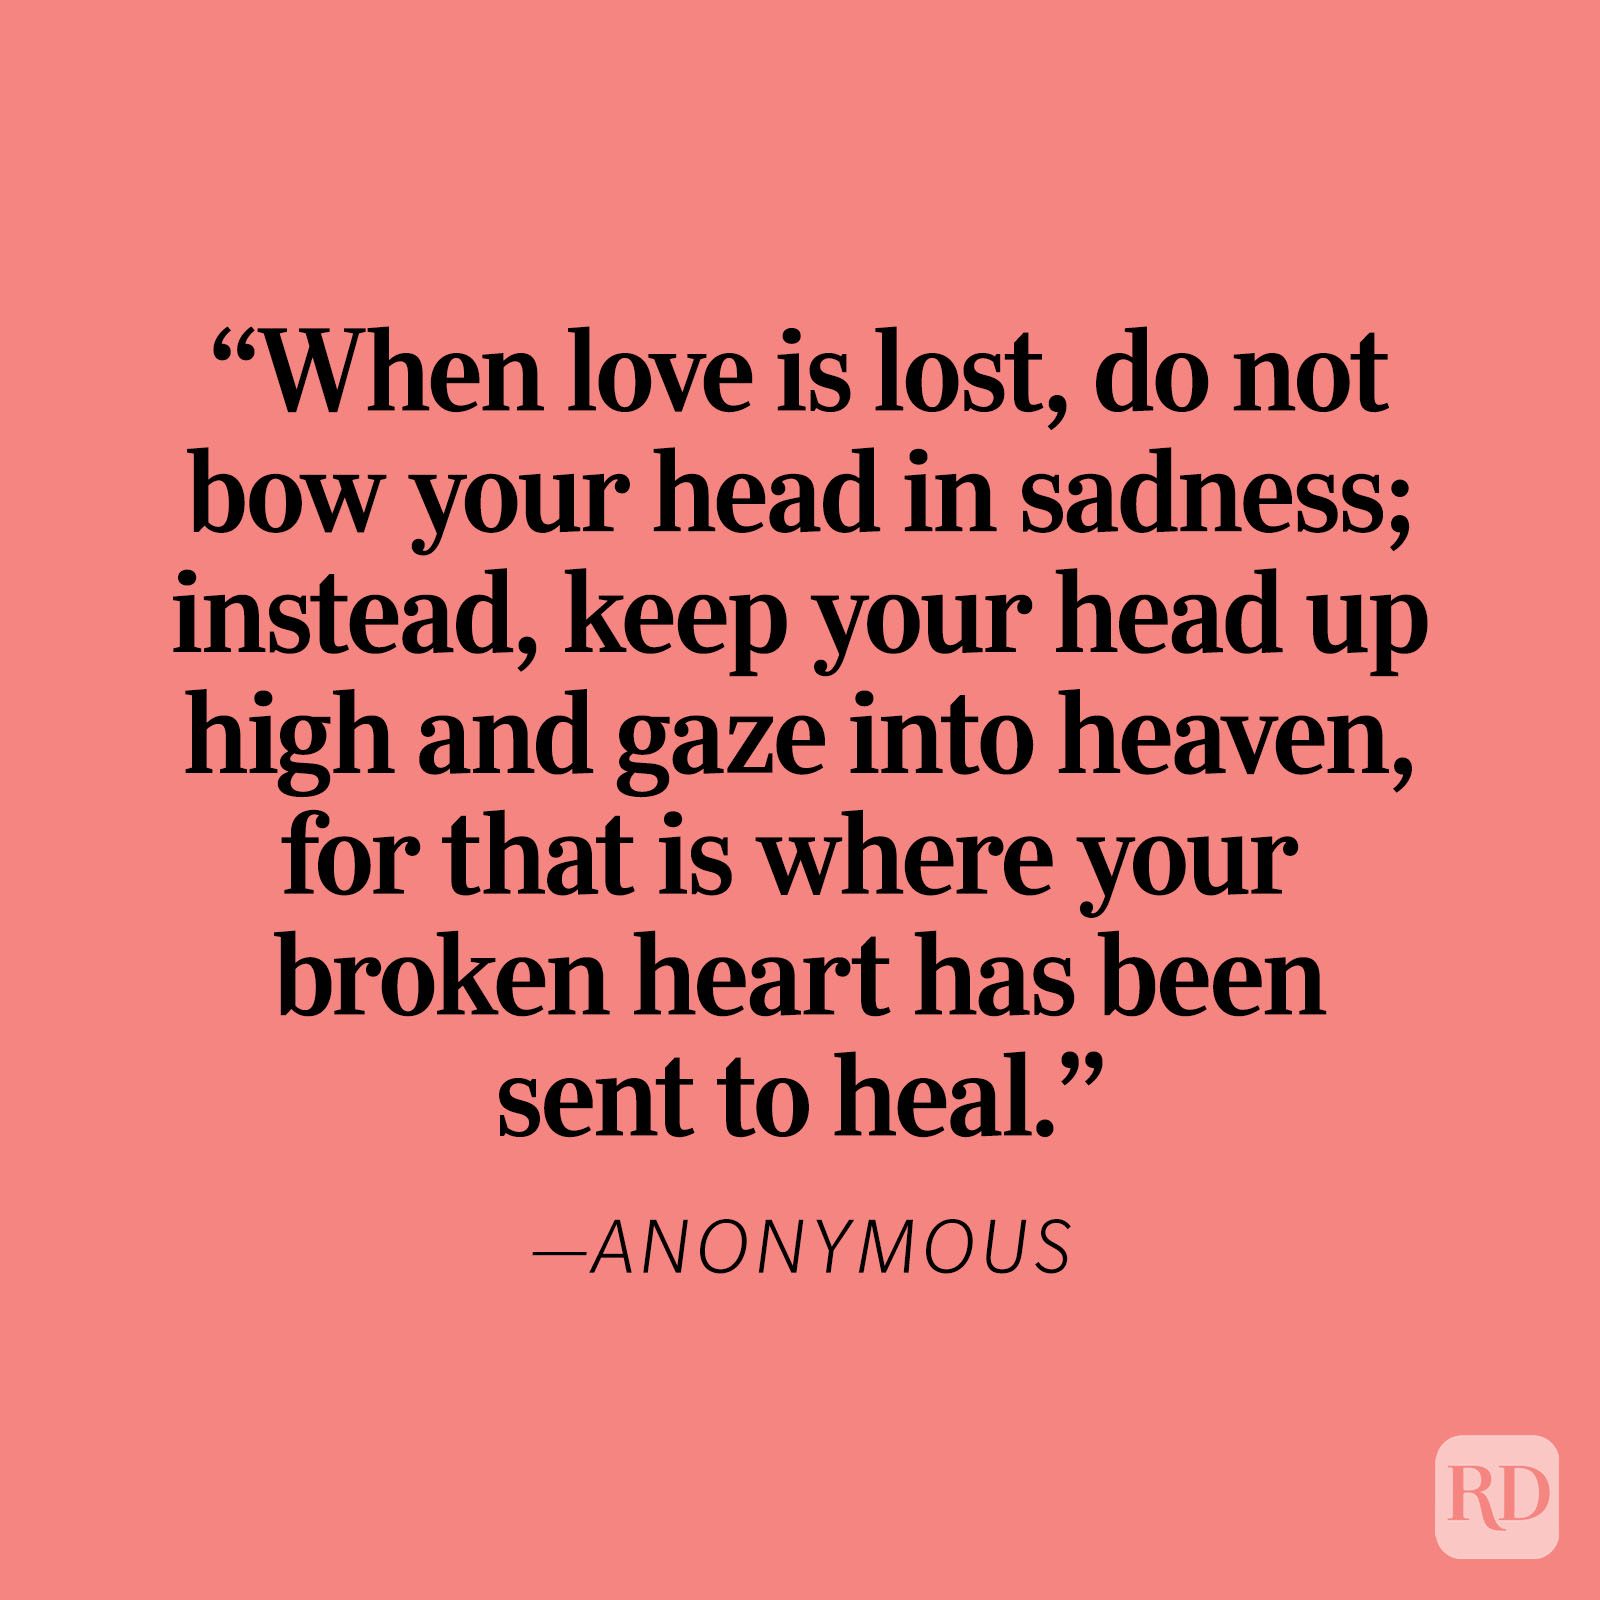 sad love heartbroken quotes